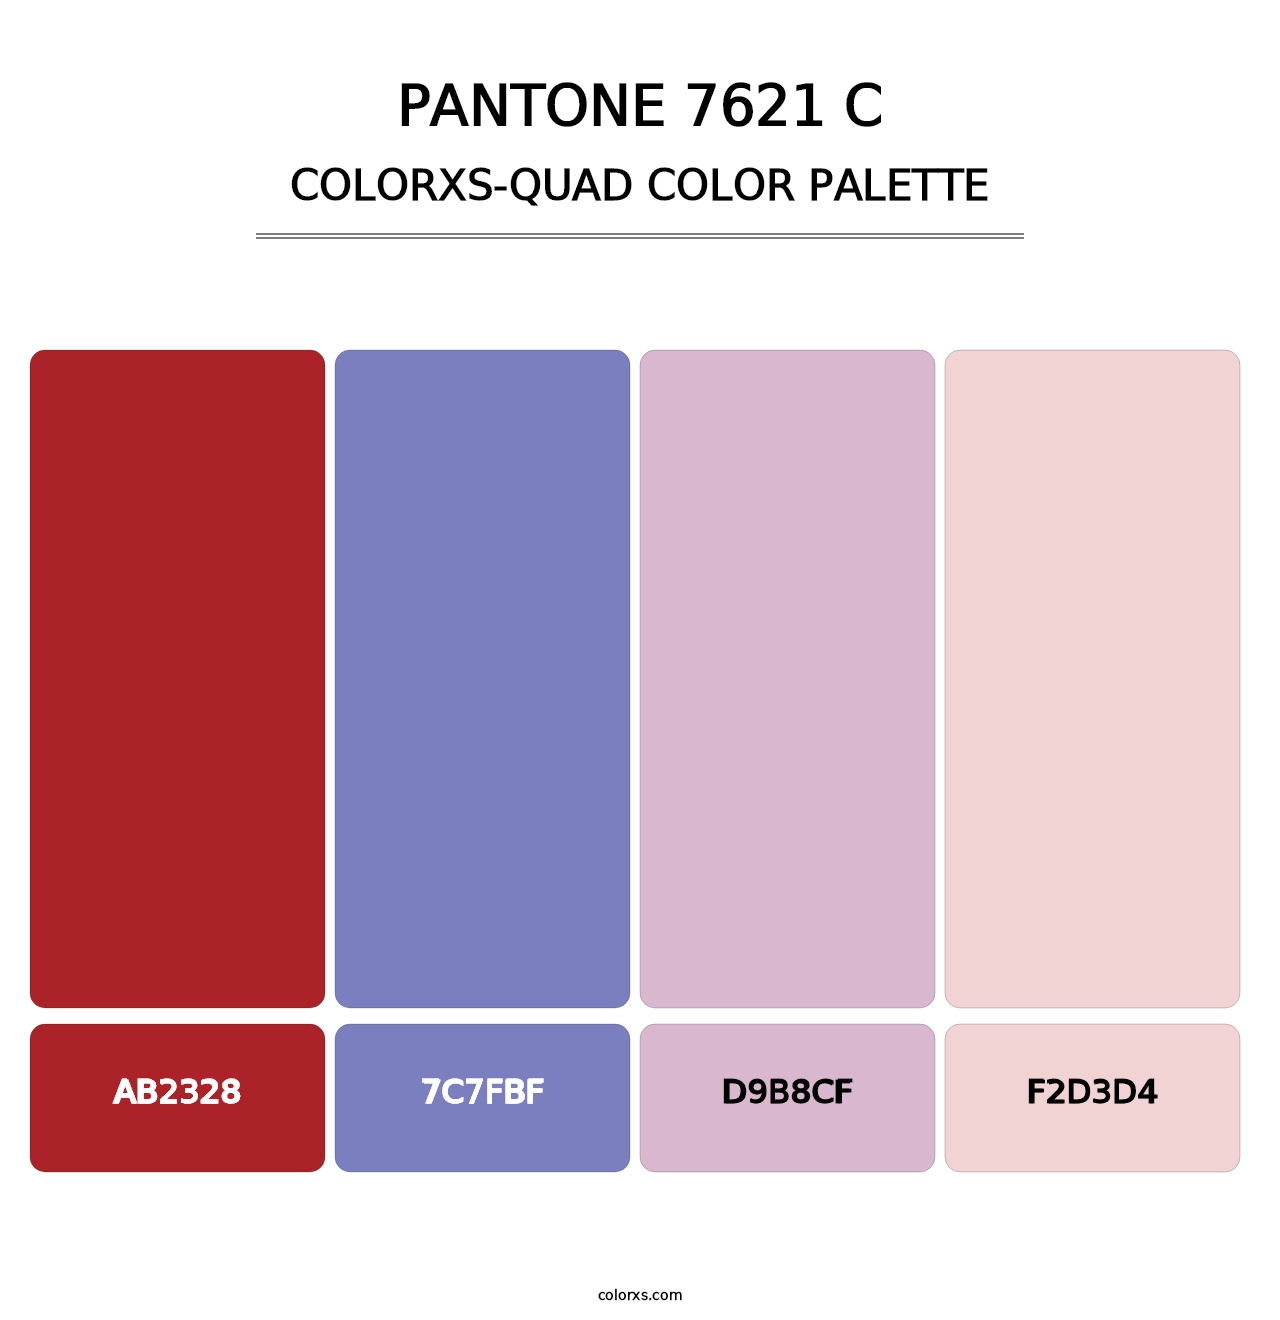 PANTONE 7621 C - Colorxs Quad Palette